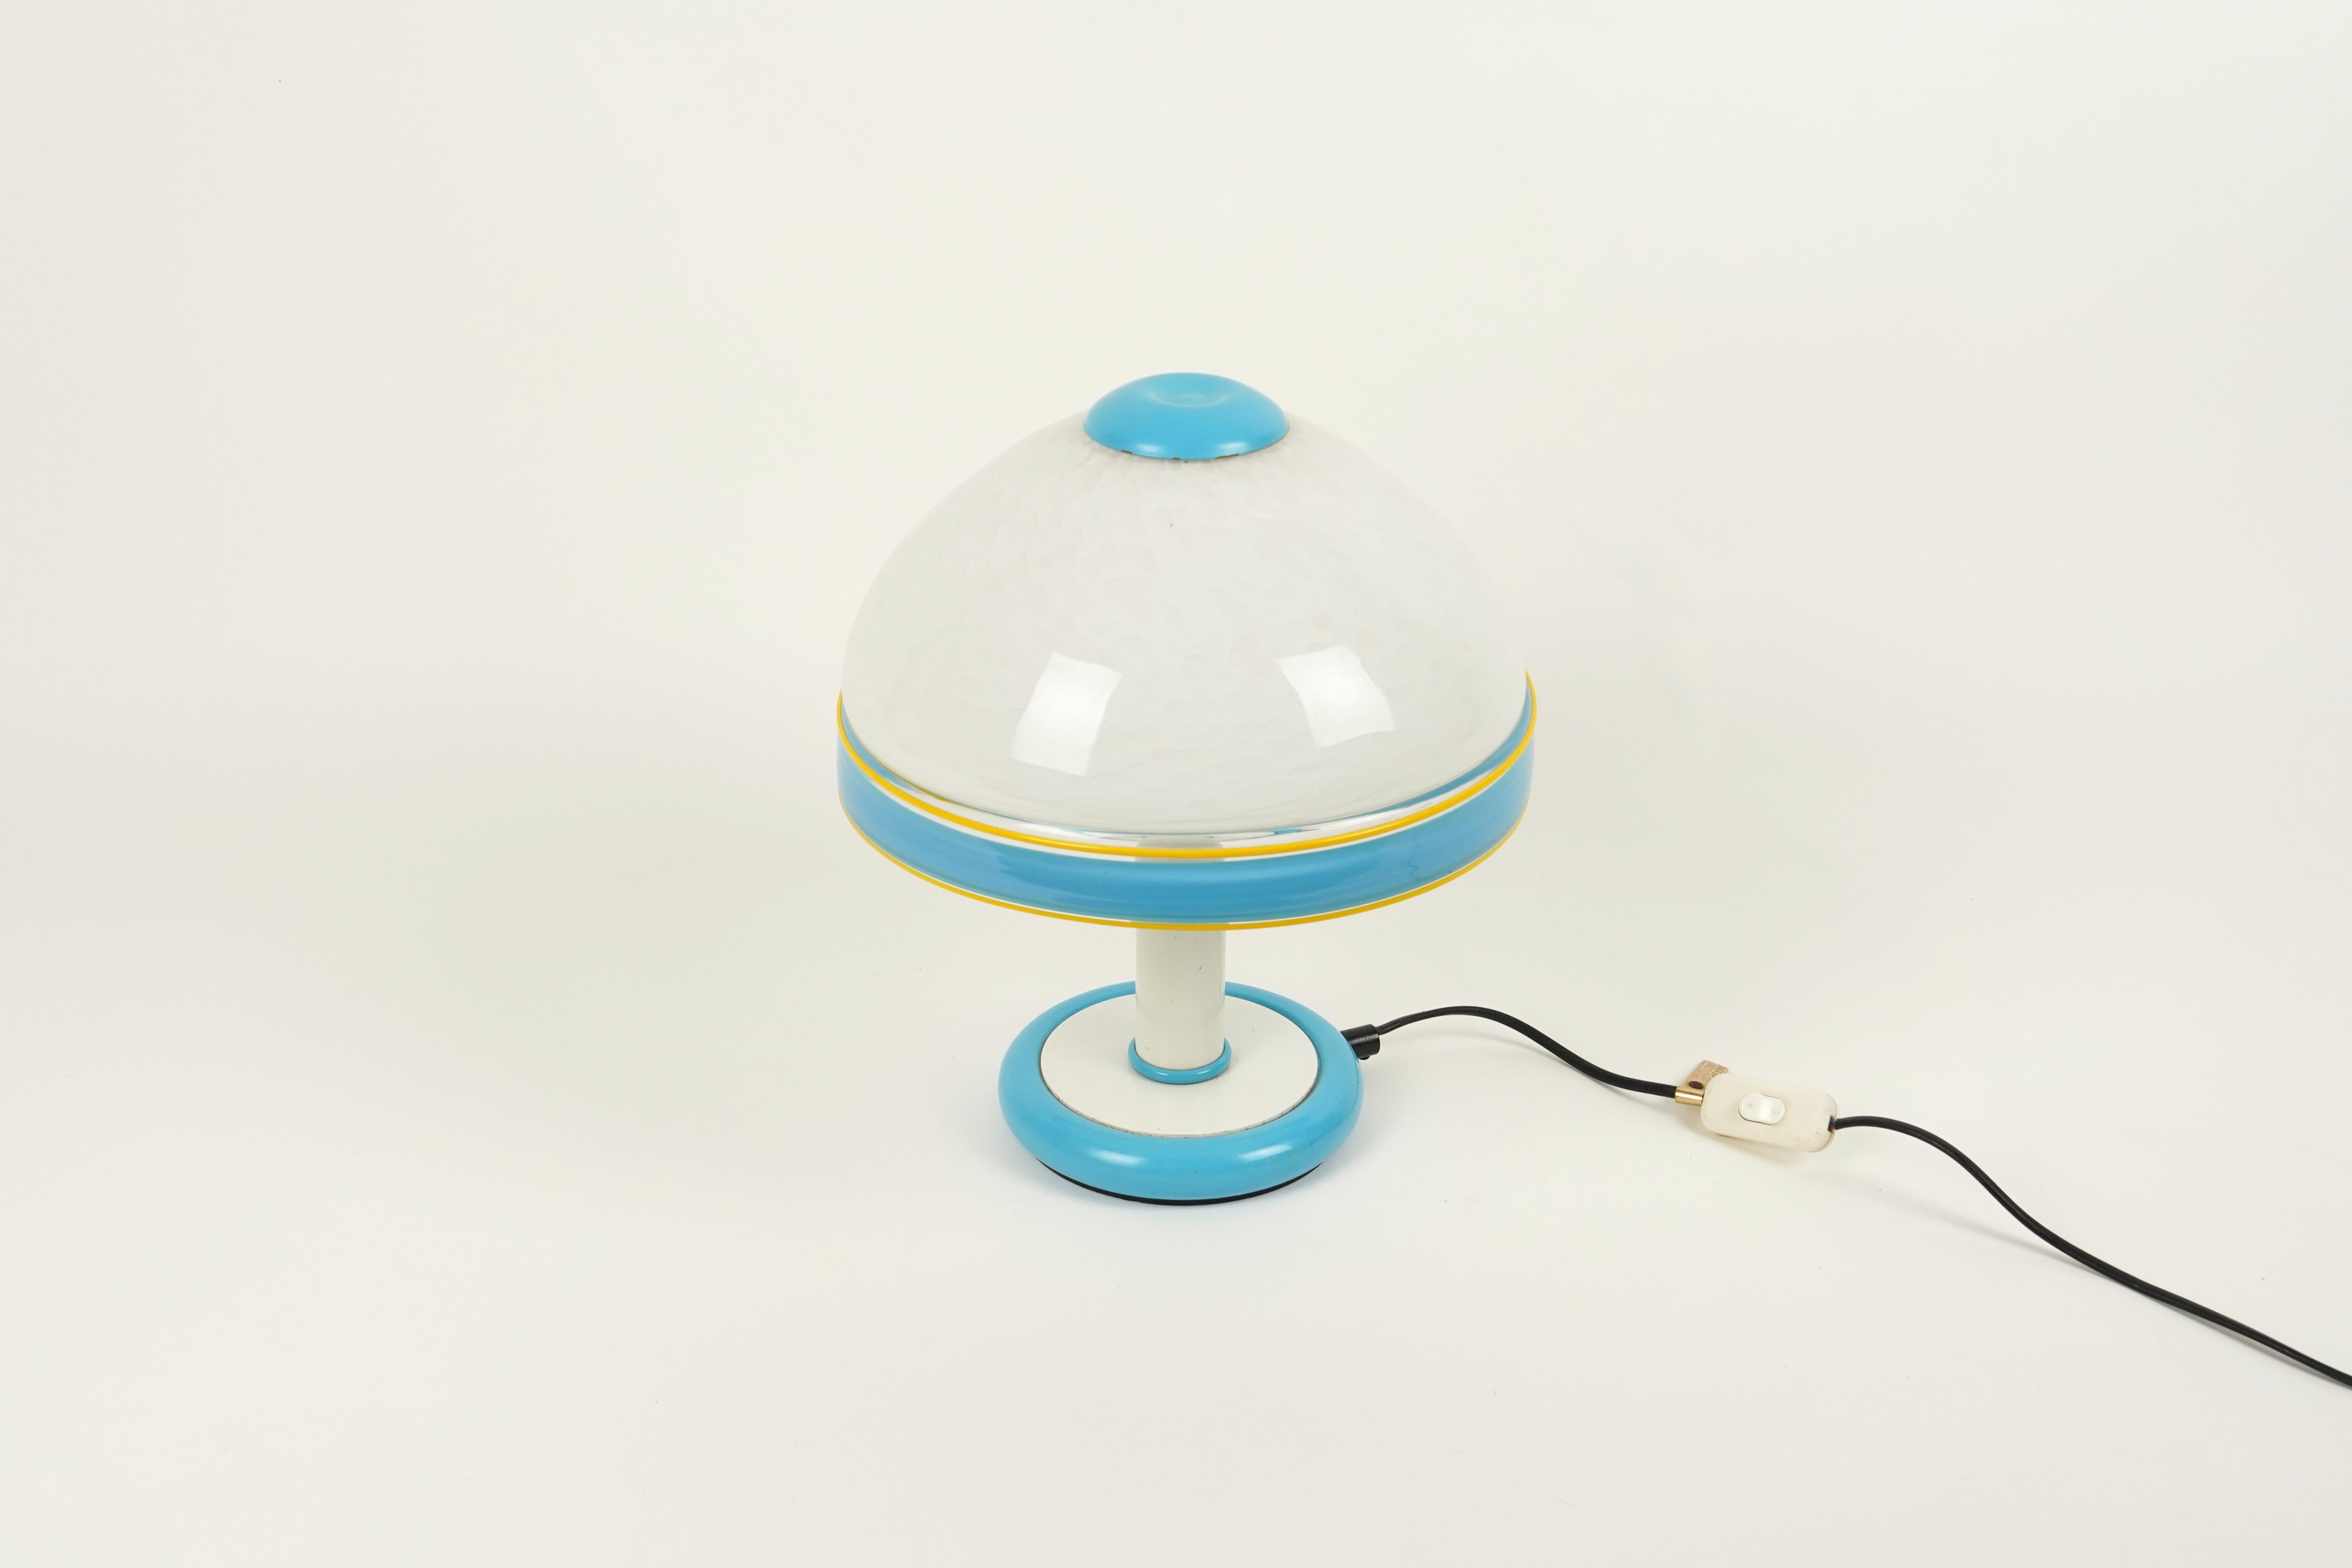 Schöne Pilz Tischlampe in Murano Glas von F. Fabbian.

Hergestellt in Italien in den 1980er Jahren.

Es hat noch sein originales Herstelleretikett.

Es wird 1 Glühbirne verwendet.